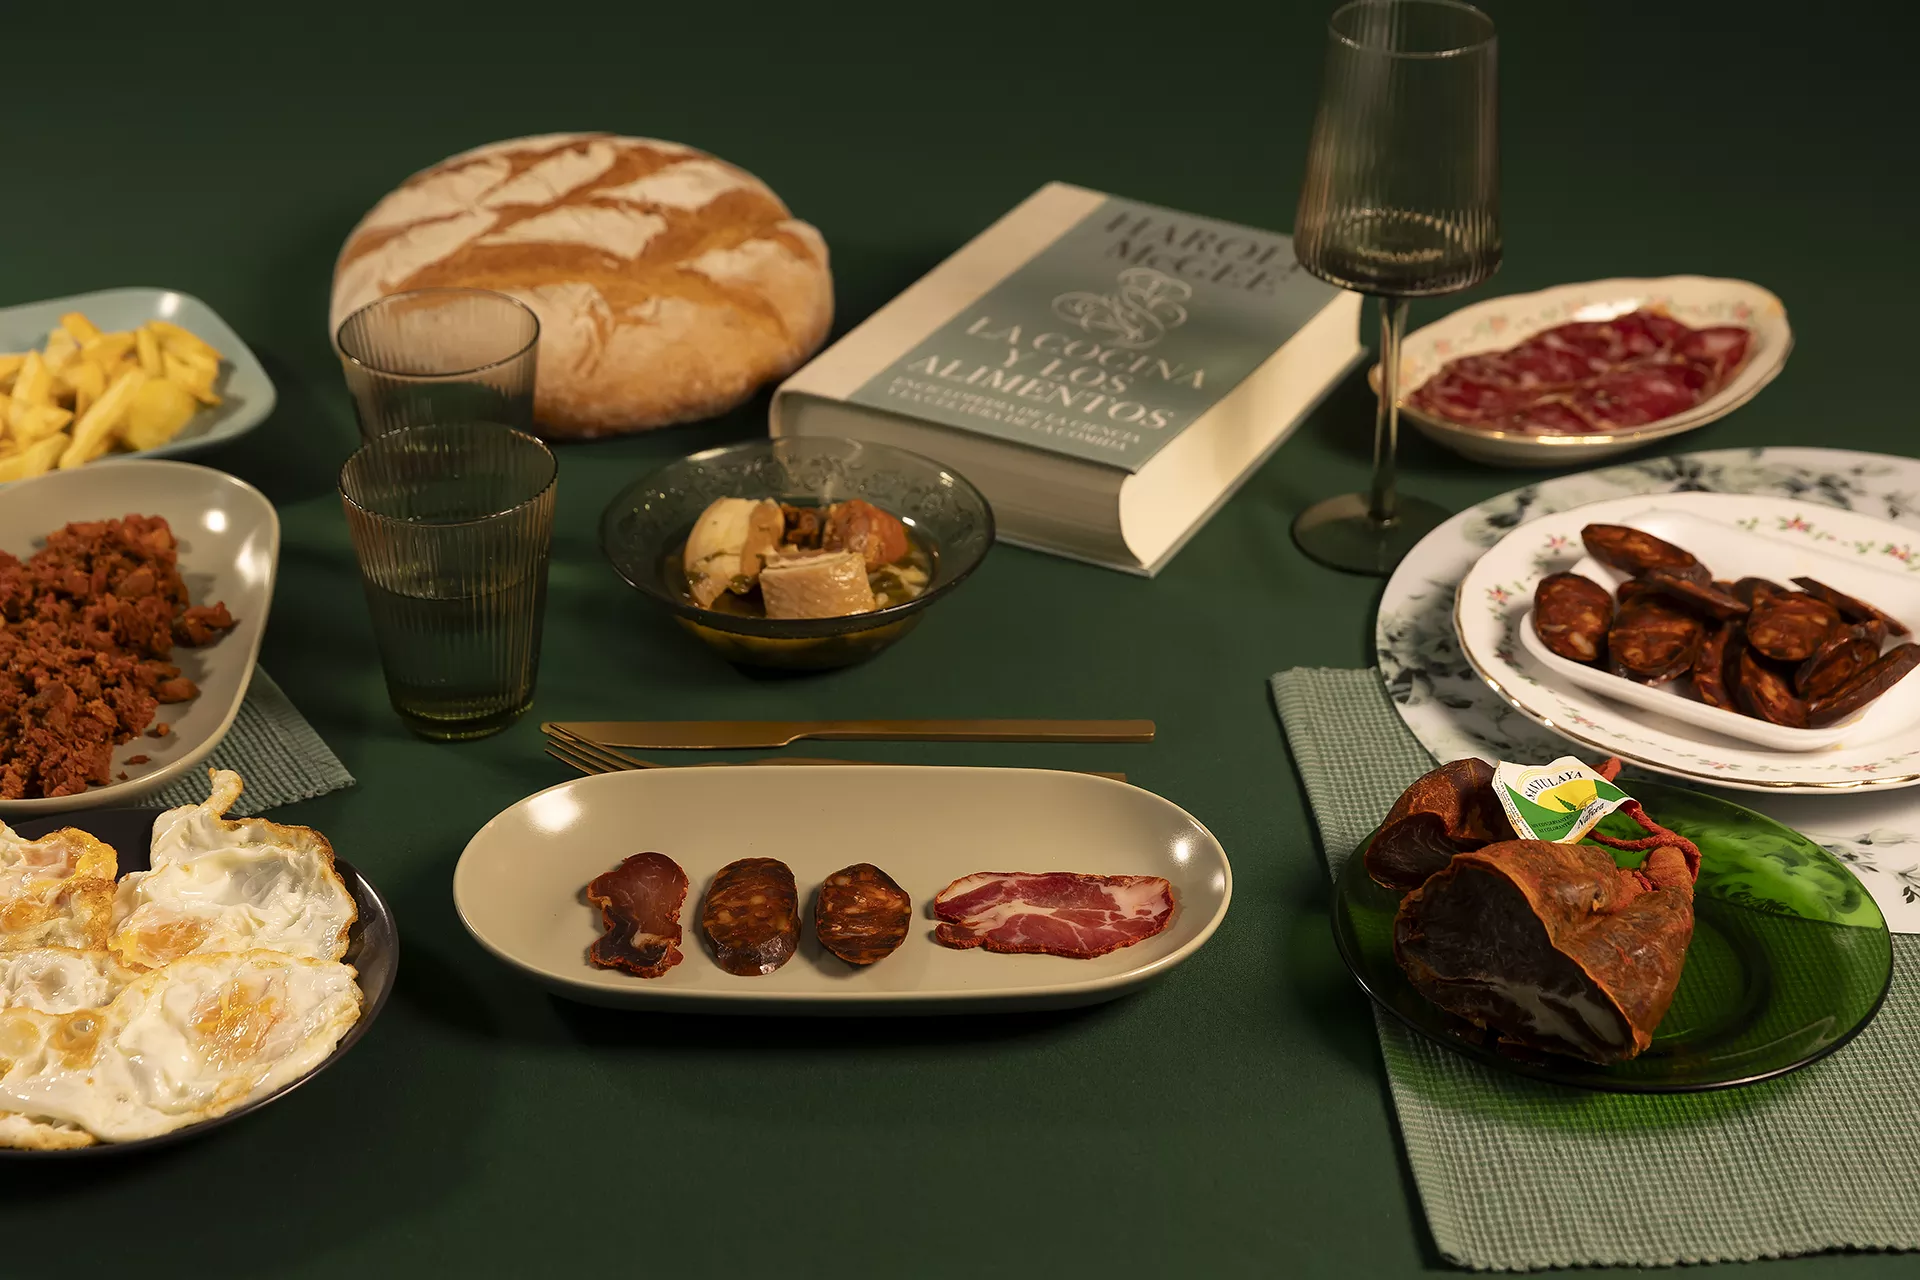 Bodegón de embutidos: chorizo, picadillo, lomo, chosco... en una mesa verde, junto a huevos fritos y una hogaza de pan